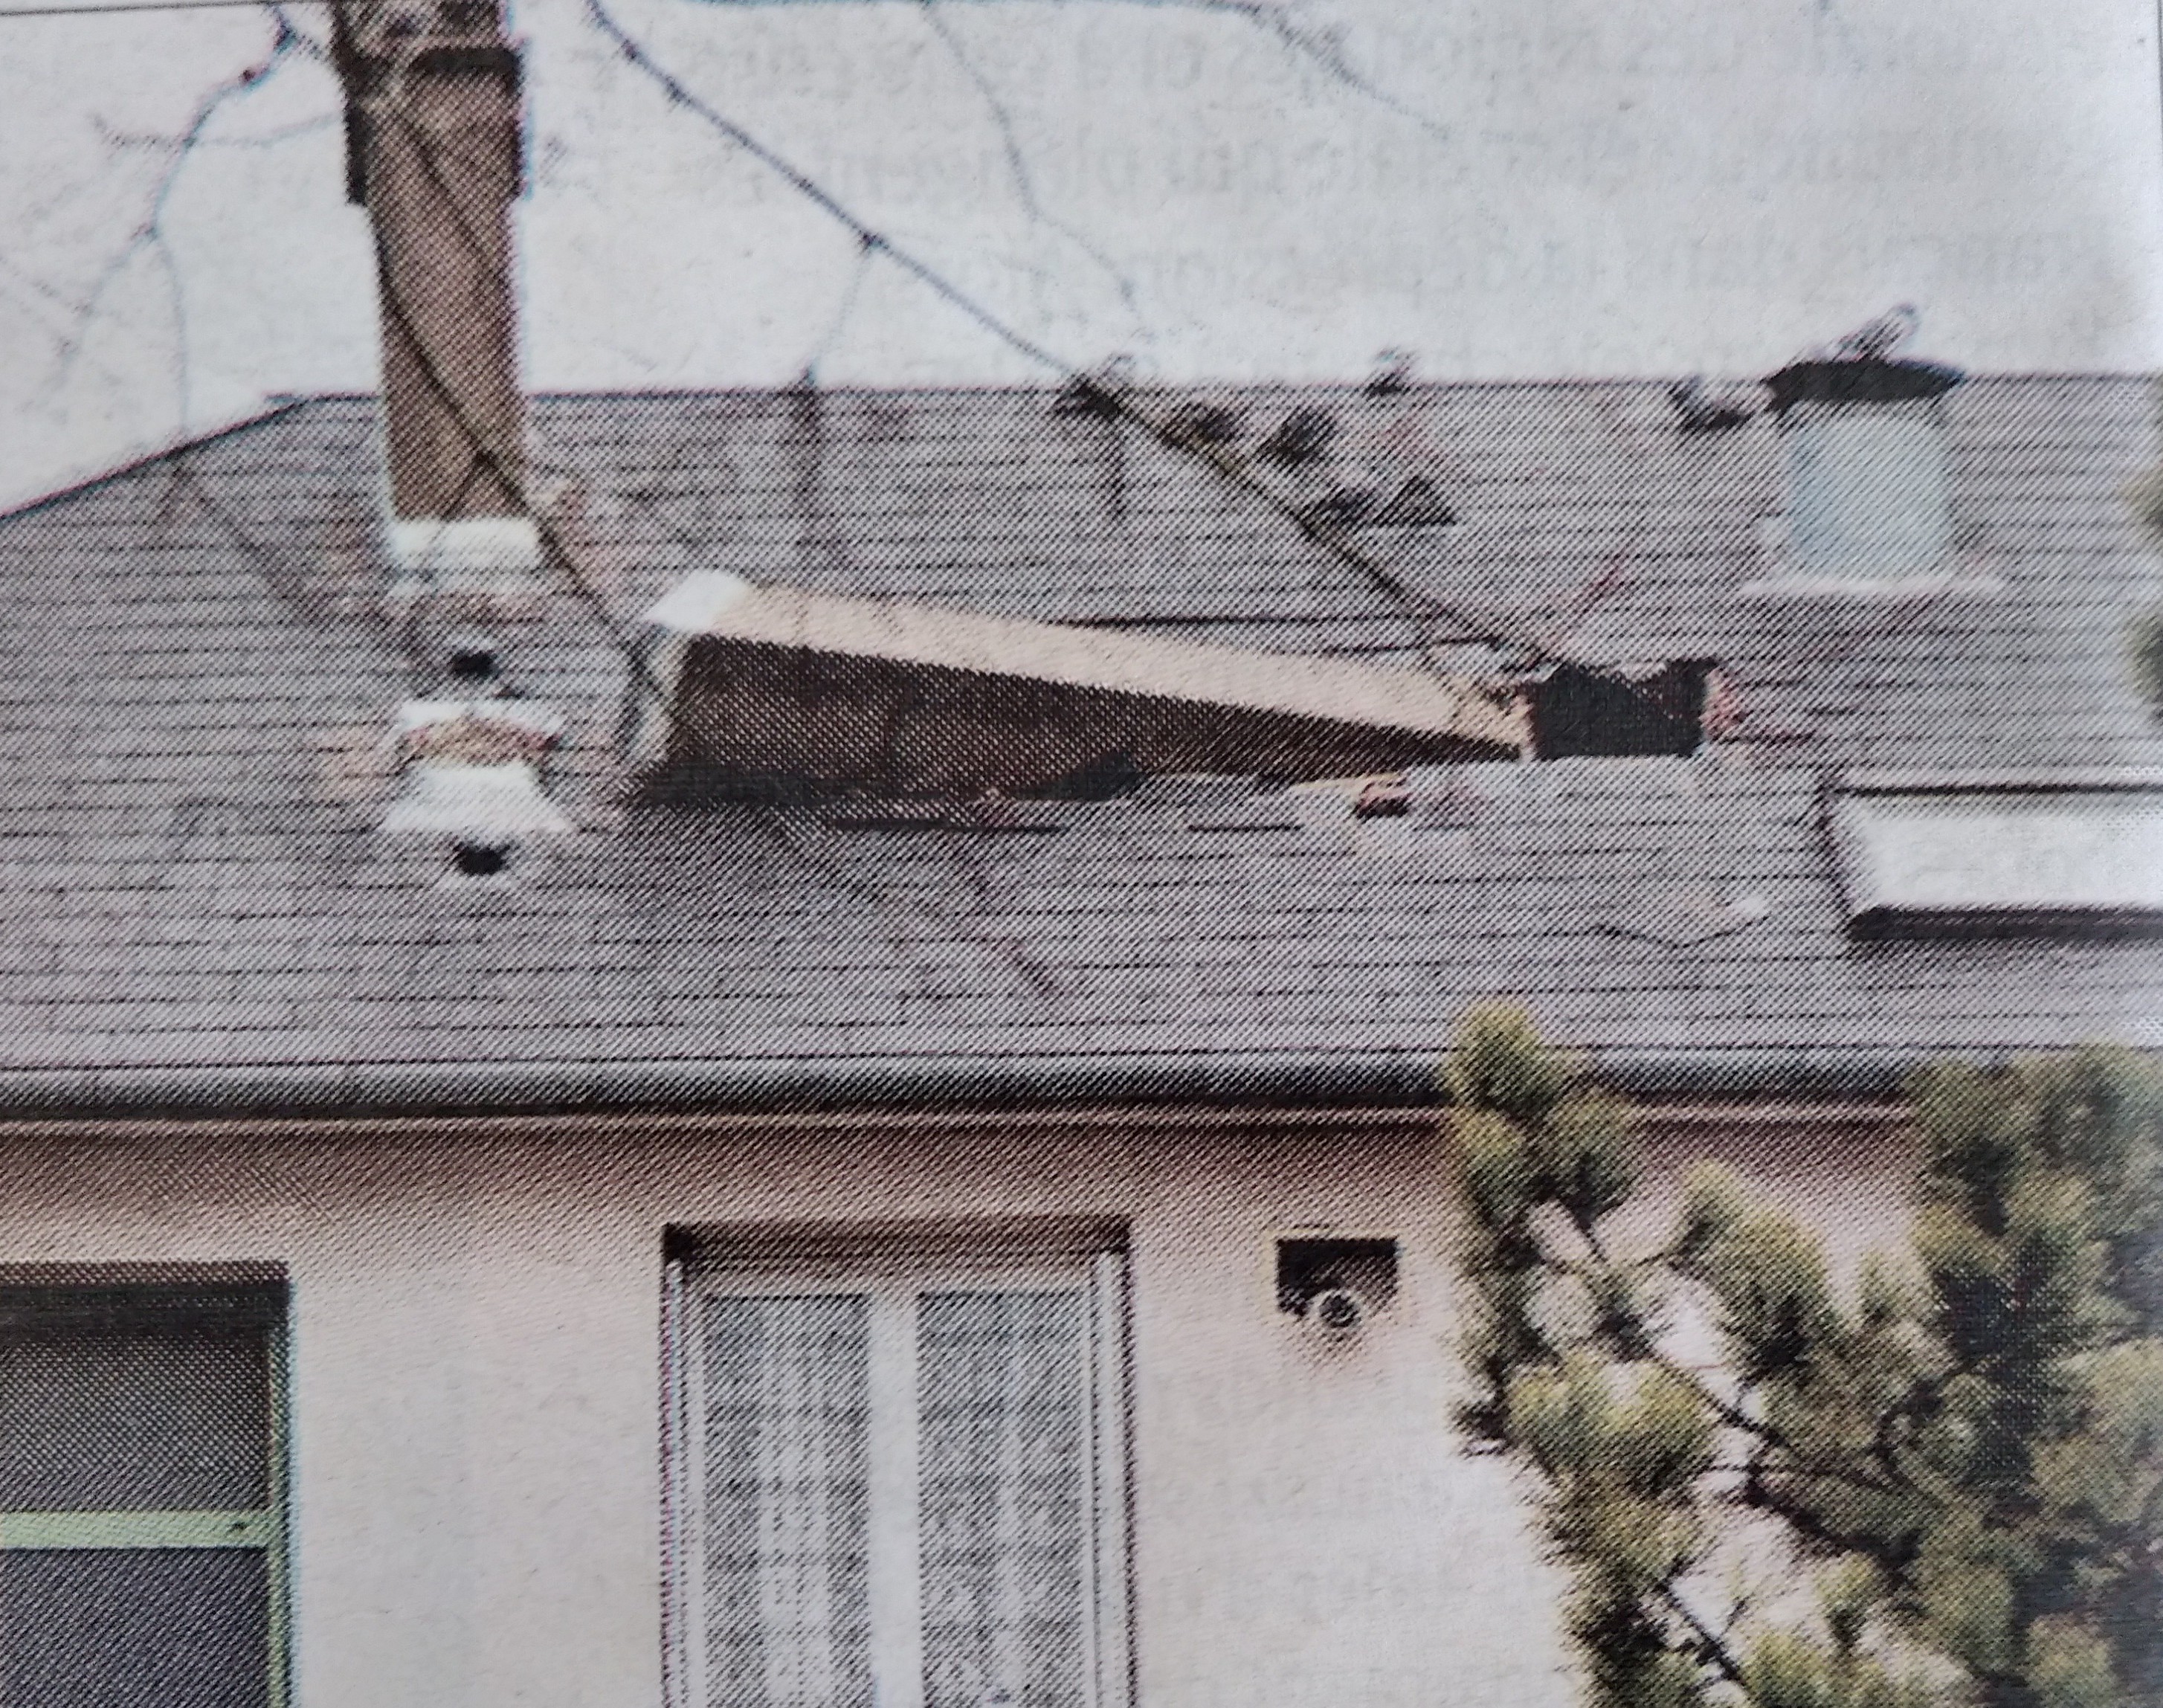 Cheminée effondrée sur un toit à Pithiviers (© archives départementales - république du centre)